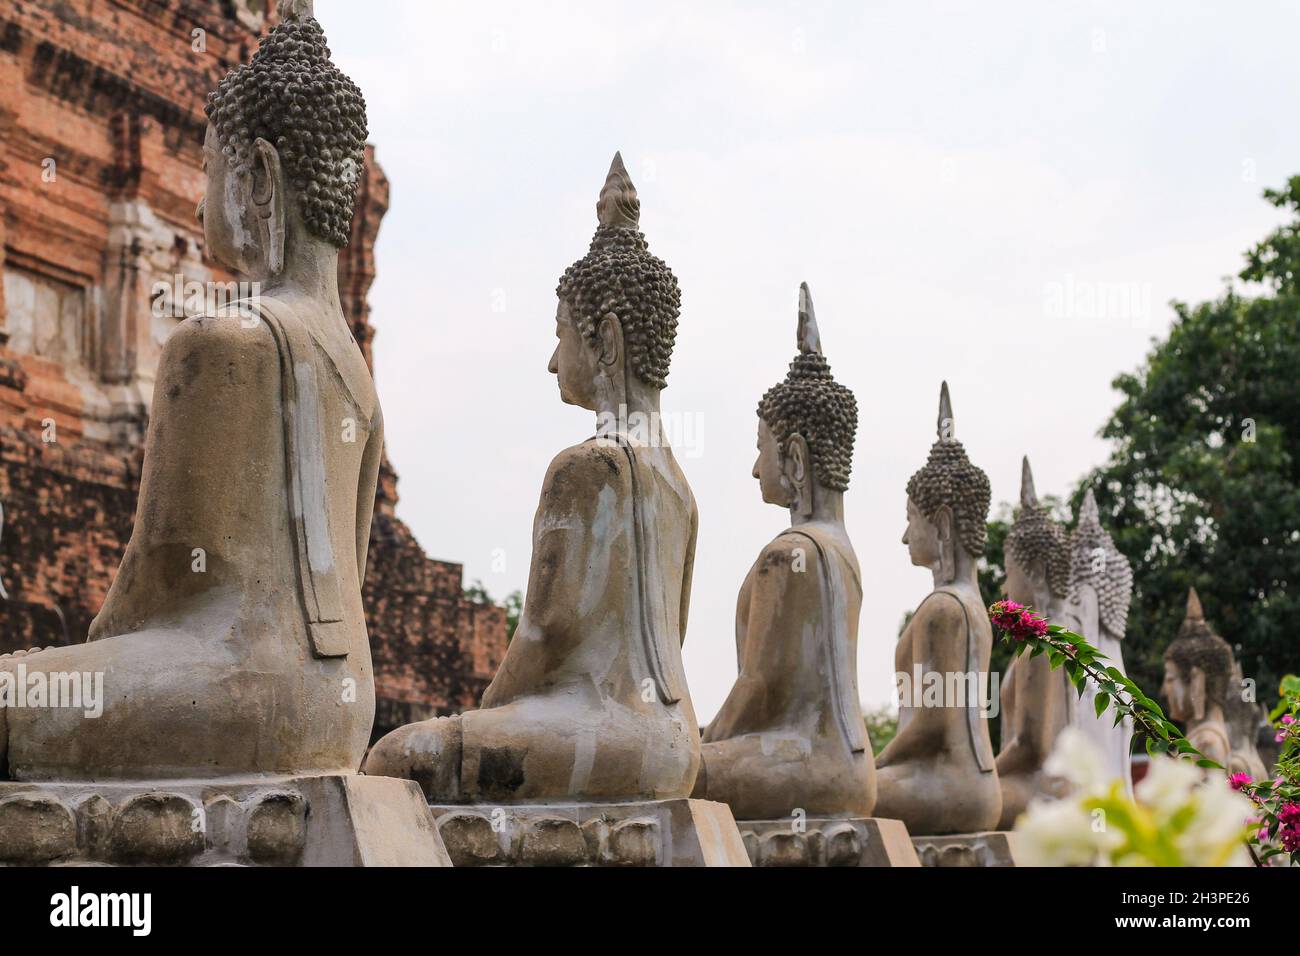 Row of Seated Buddha Statues at Wat Yai Chai Mongkon Buddhist temple in Ayutthaya Stock Photo